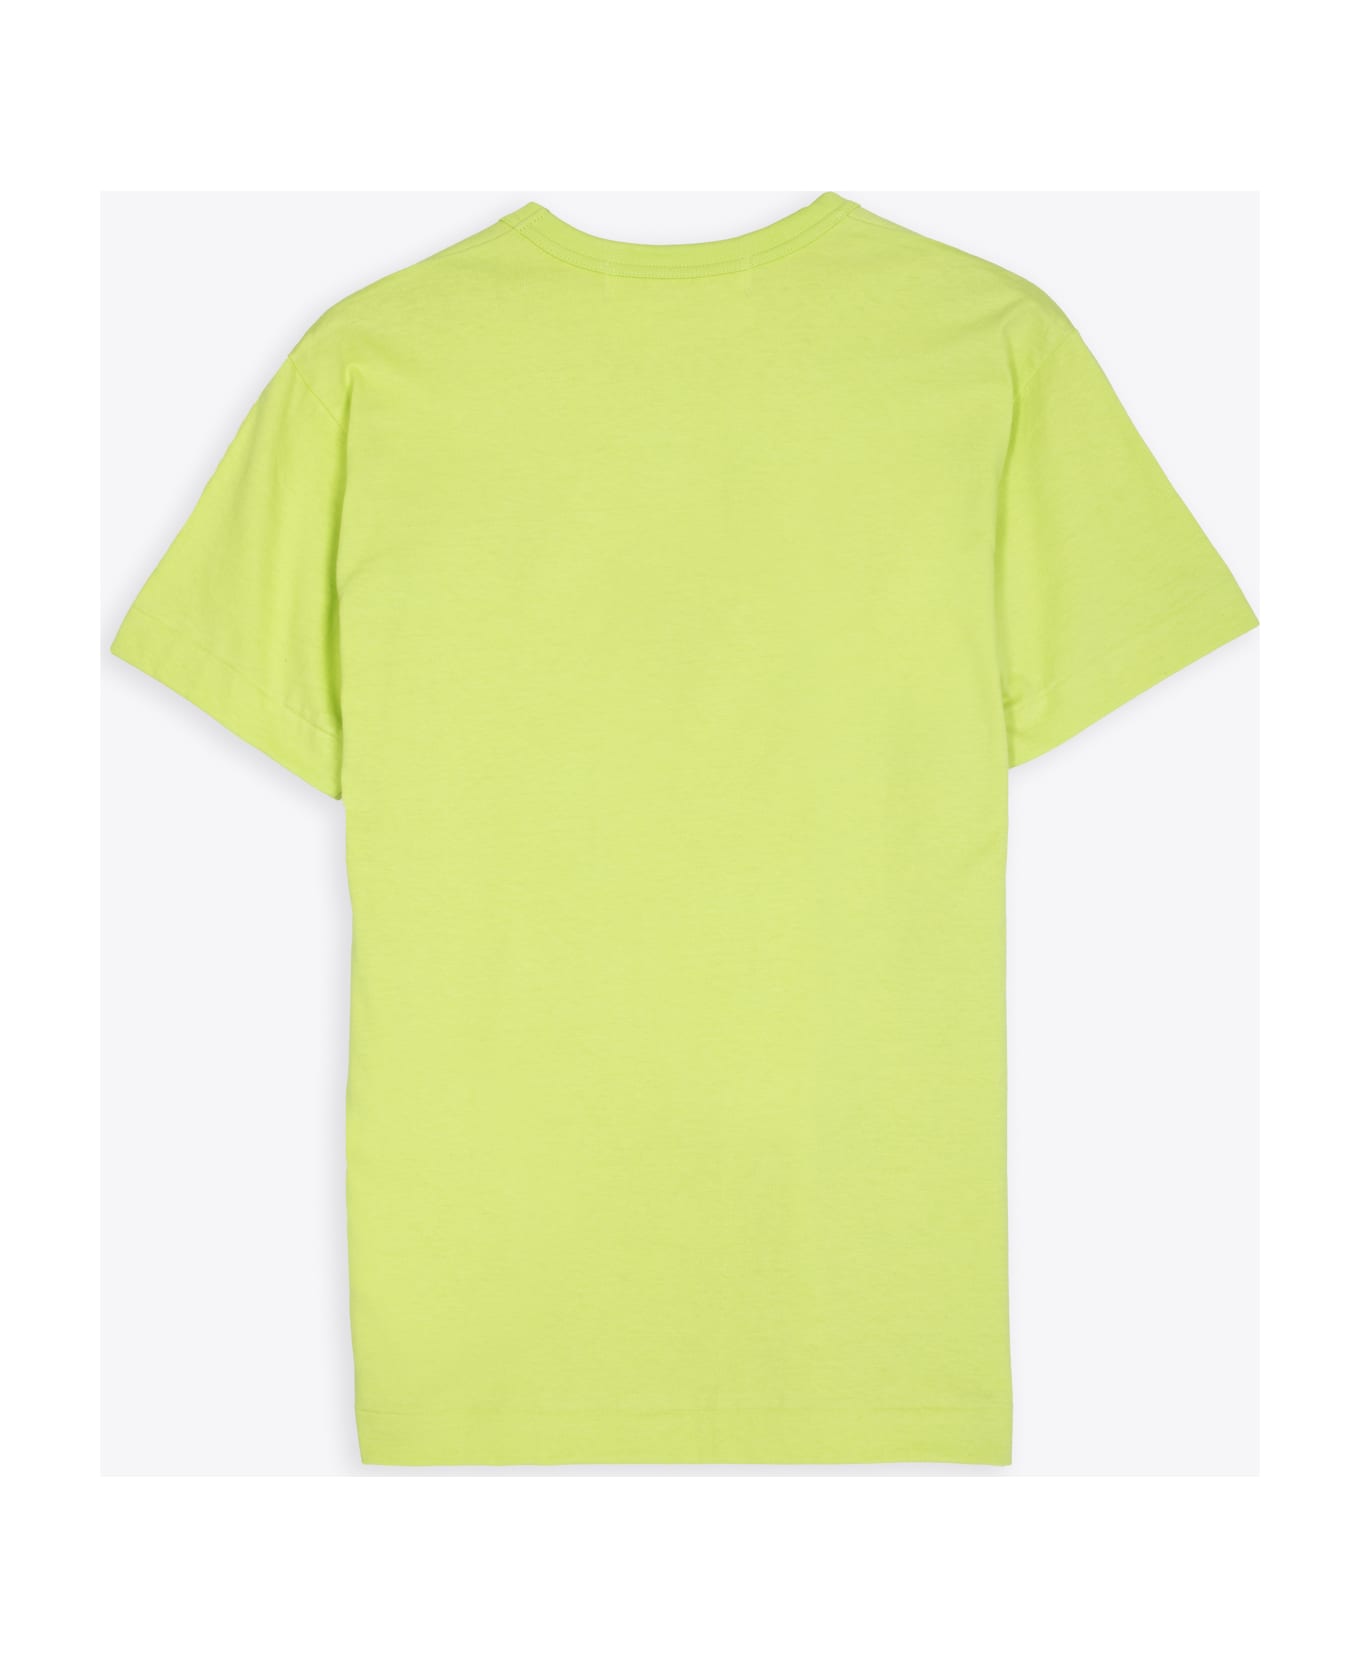 Comme des Garçons Play Mens T-shirt Short Sleeve Lime green t-shirt with big heart patch - Verde